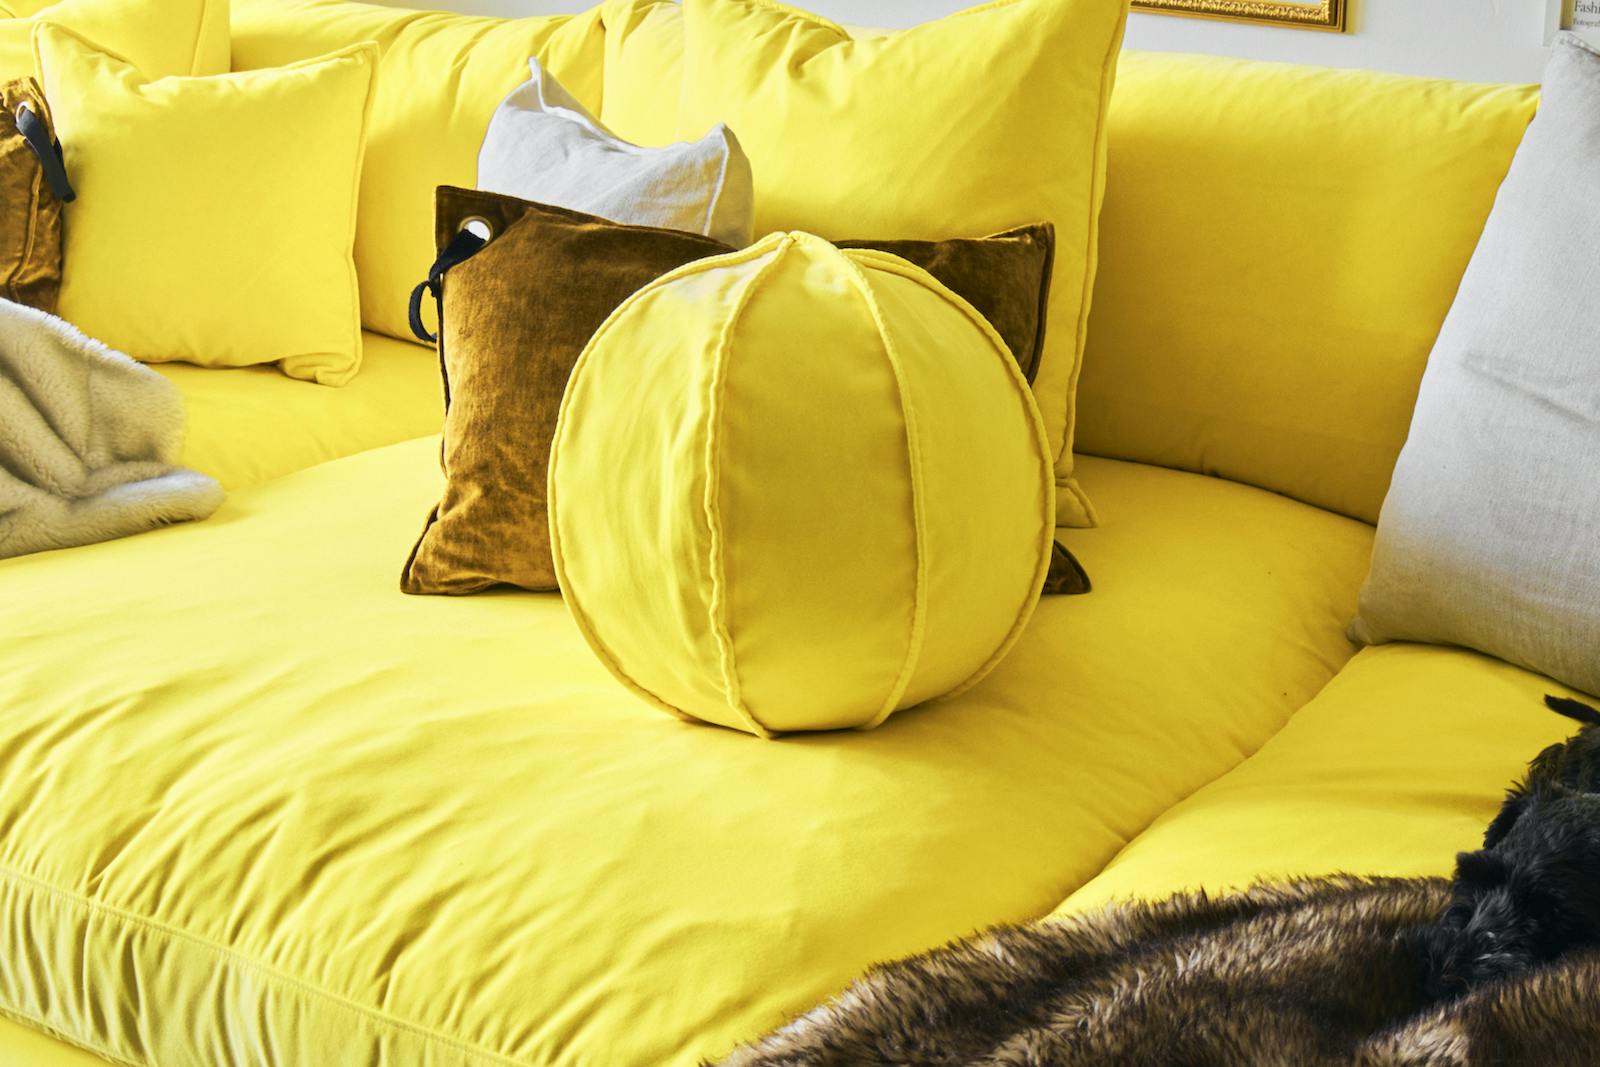 30x30cm bred bollkudde med en dekorativ söm i gul polyestersammet.